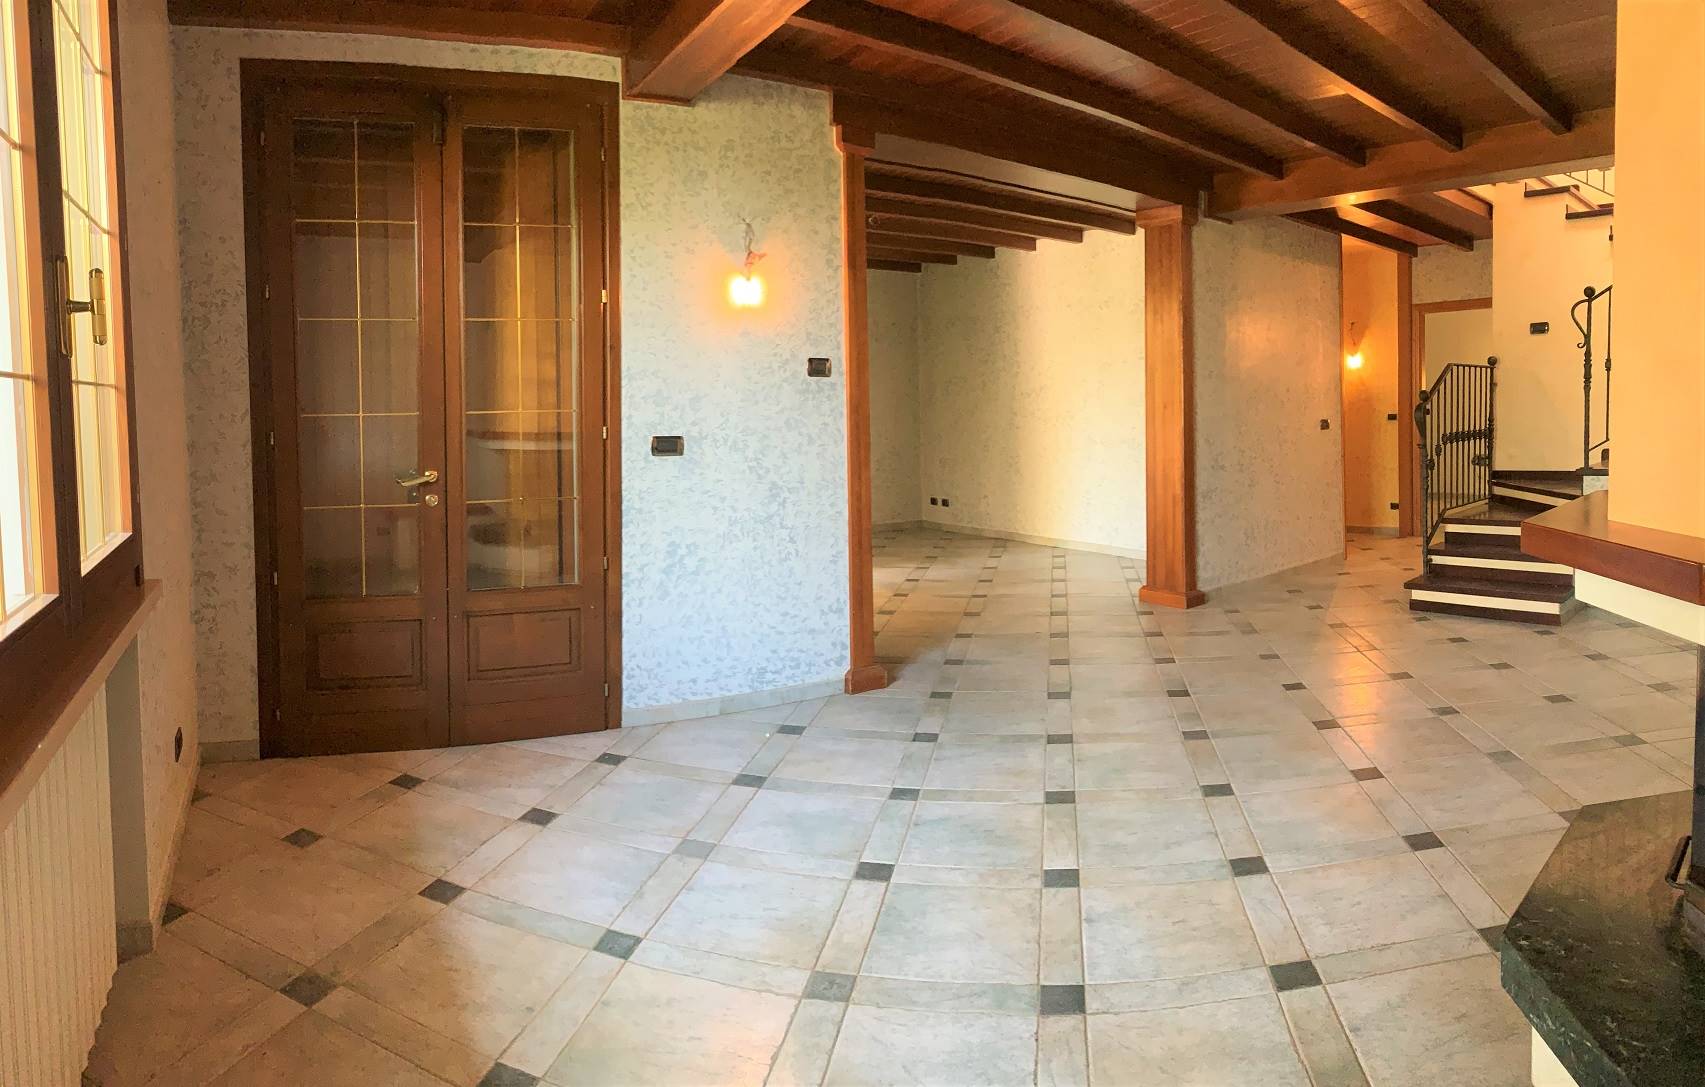 Villa a Schiera in vendita a Castel d'Ario, 7 locali, zona Zona: Centro Urbano, prezzo € 205.000 | CambioCasa.it